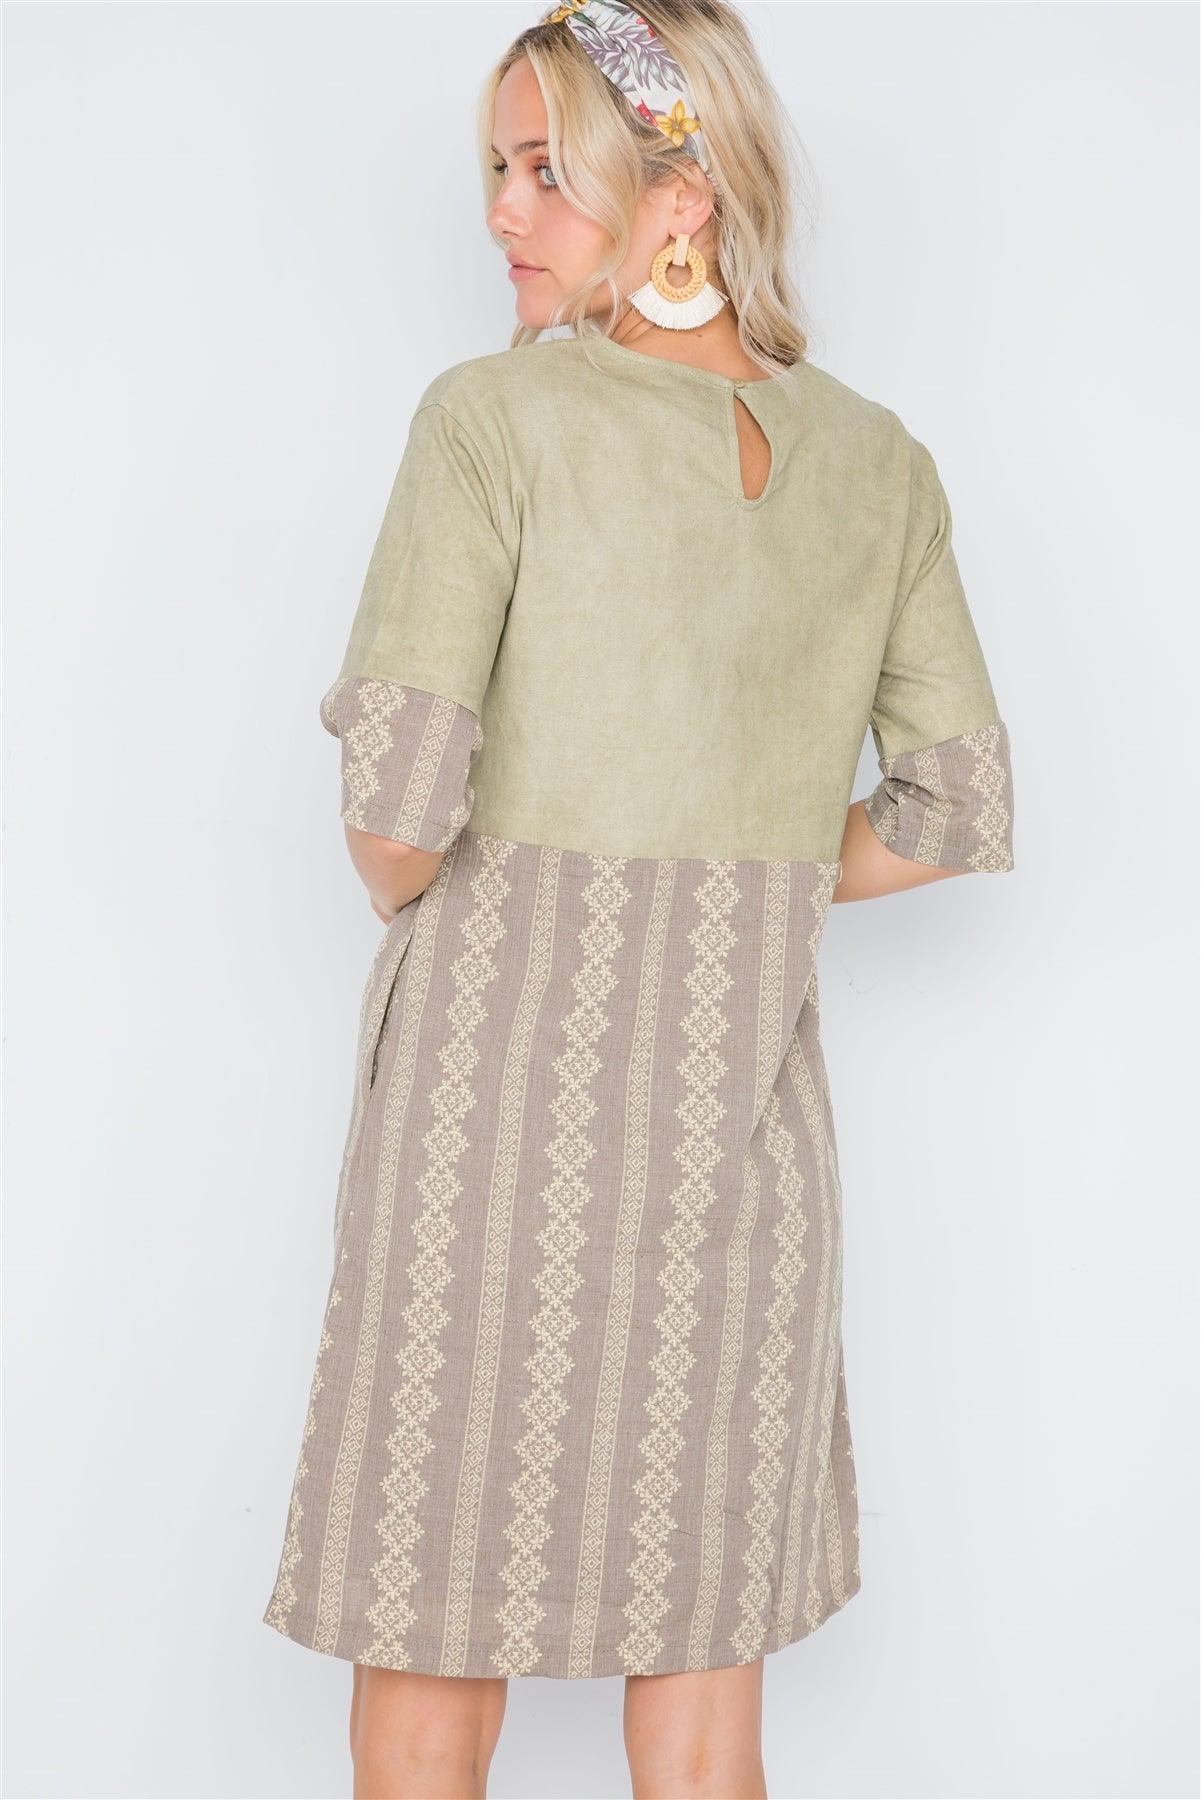 Mocha Olive Contrast Design Shift Boho Dress